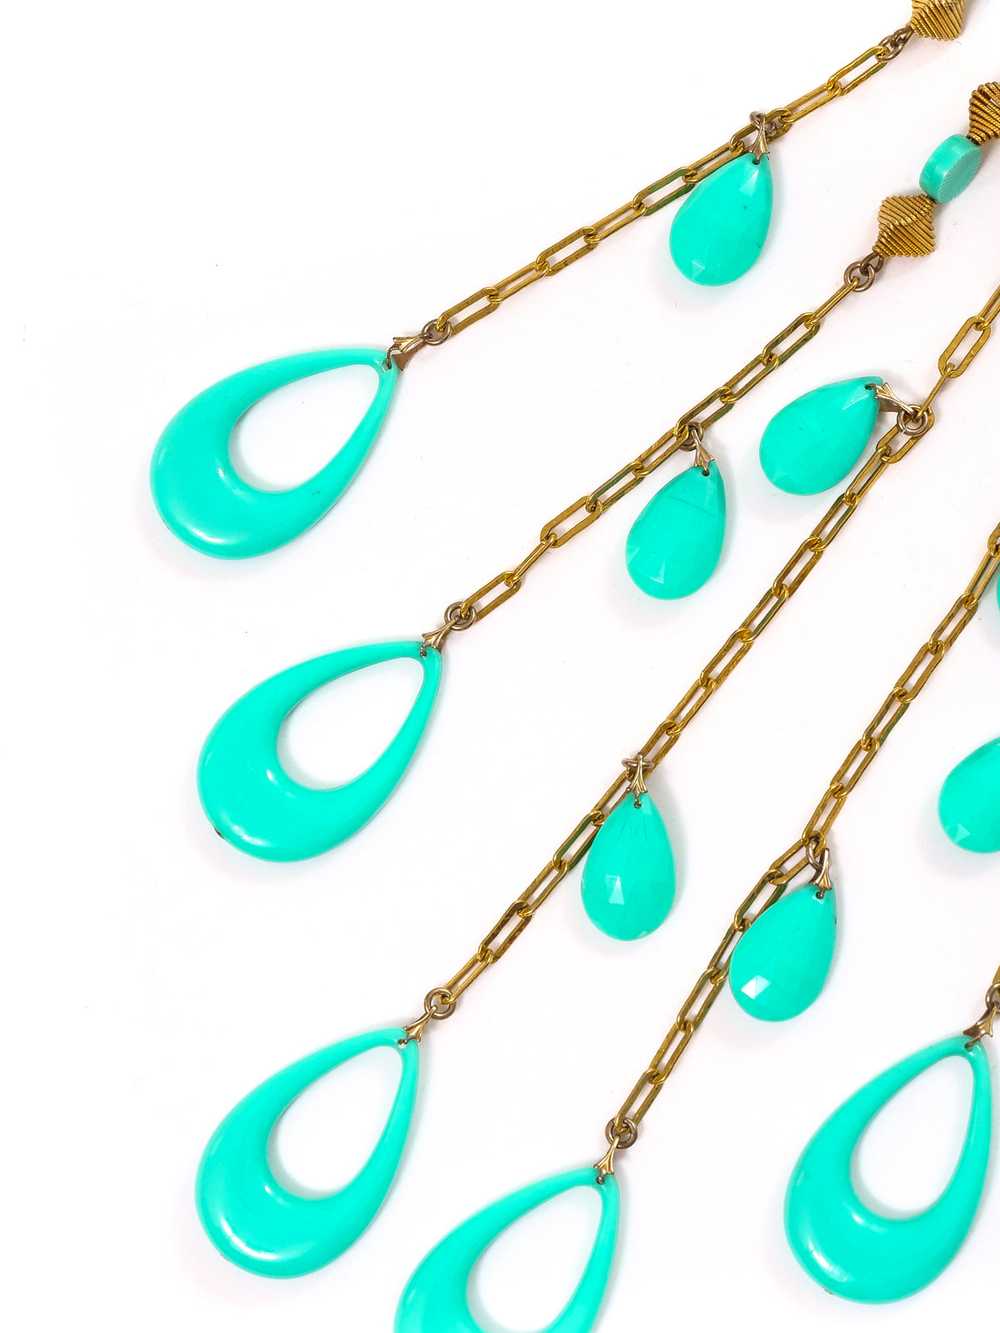 Turquoise Bead Fringed Necklace - image 4